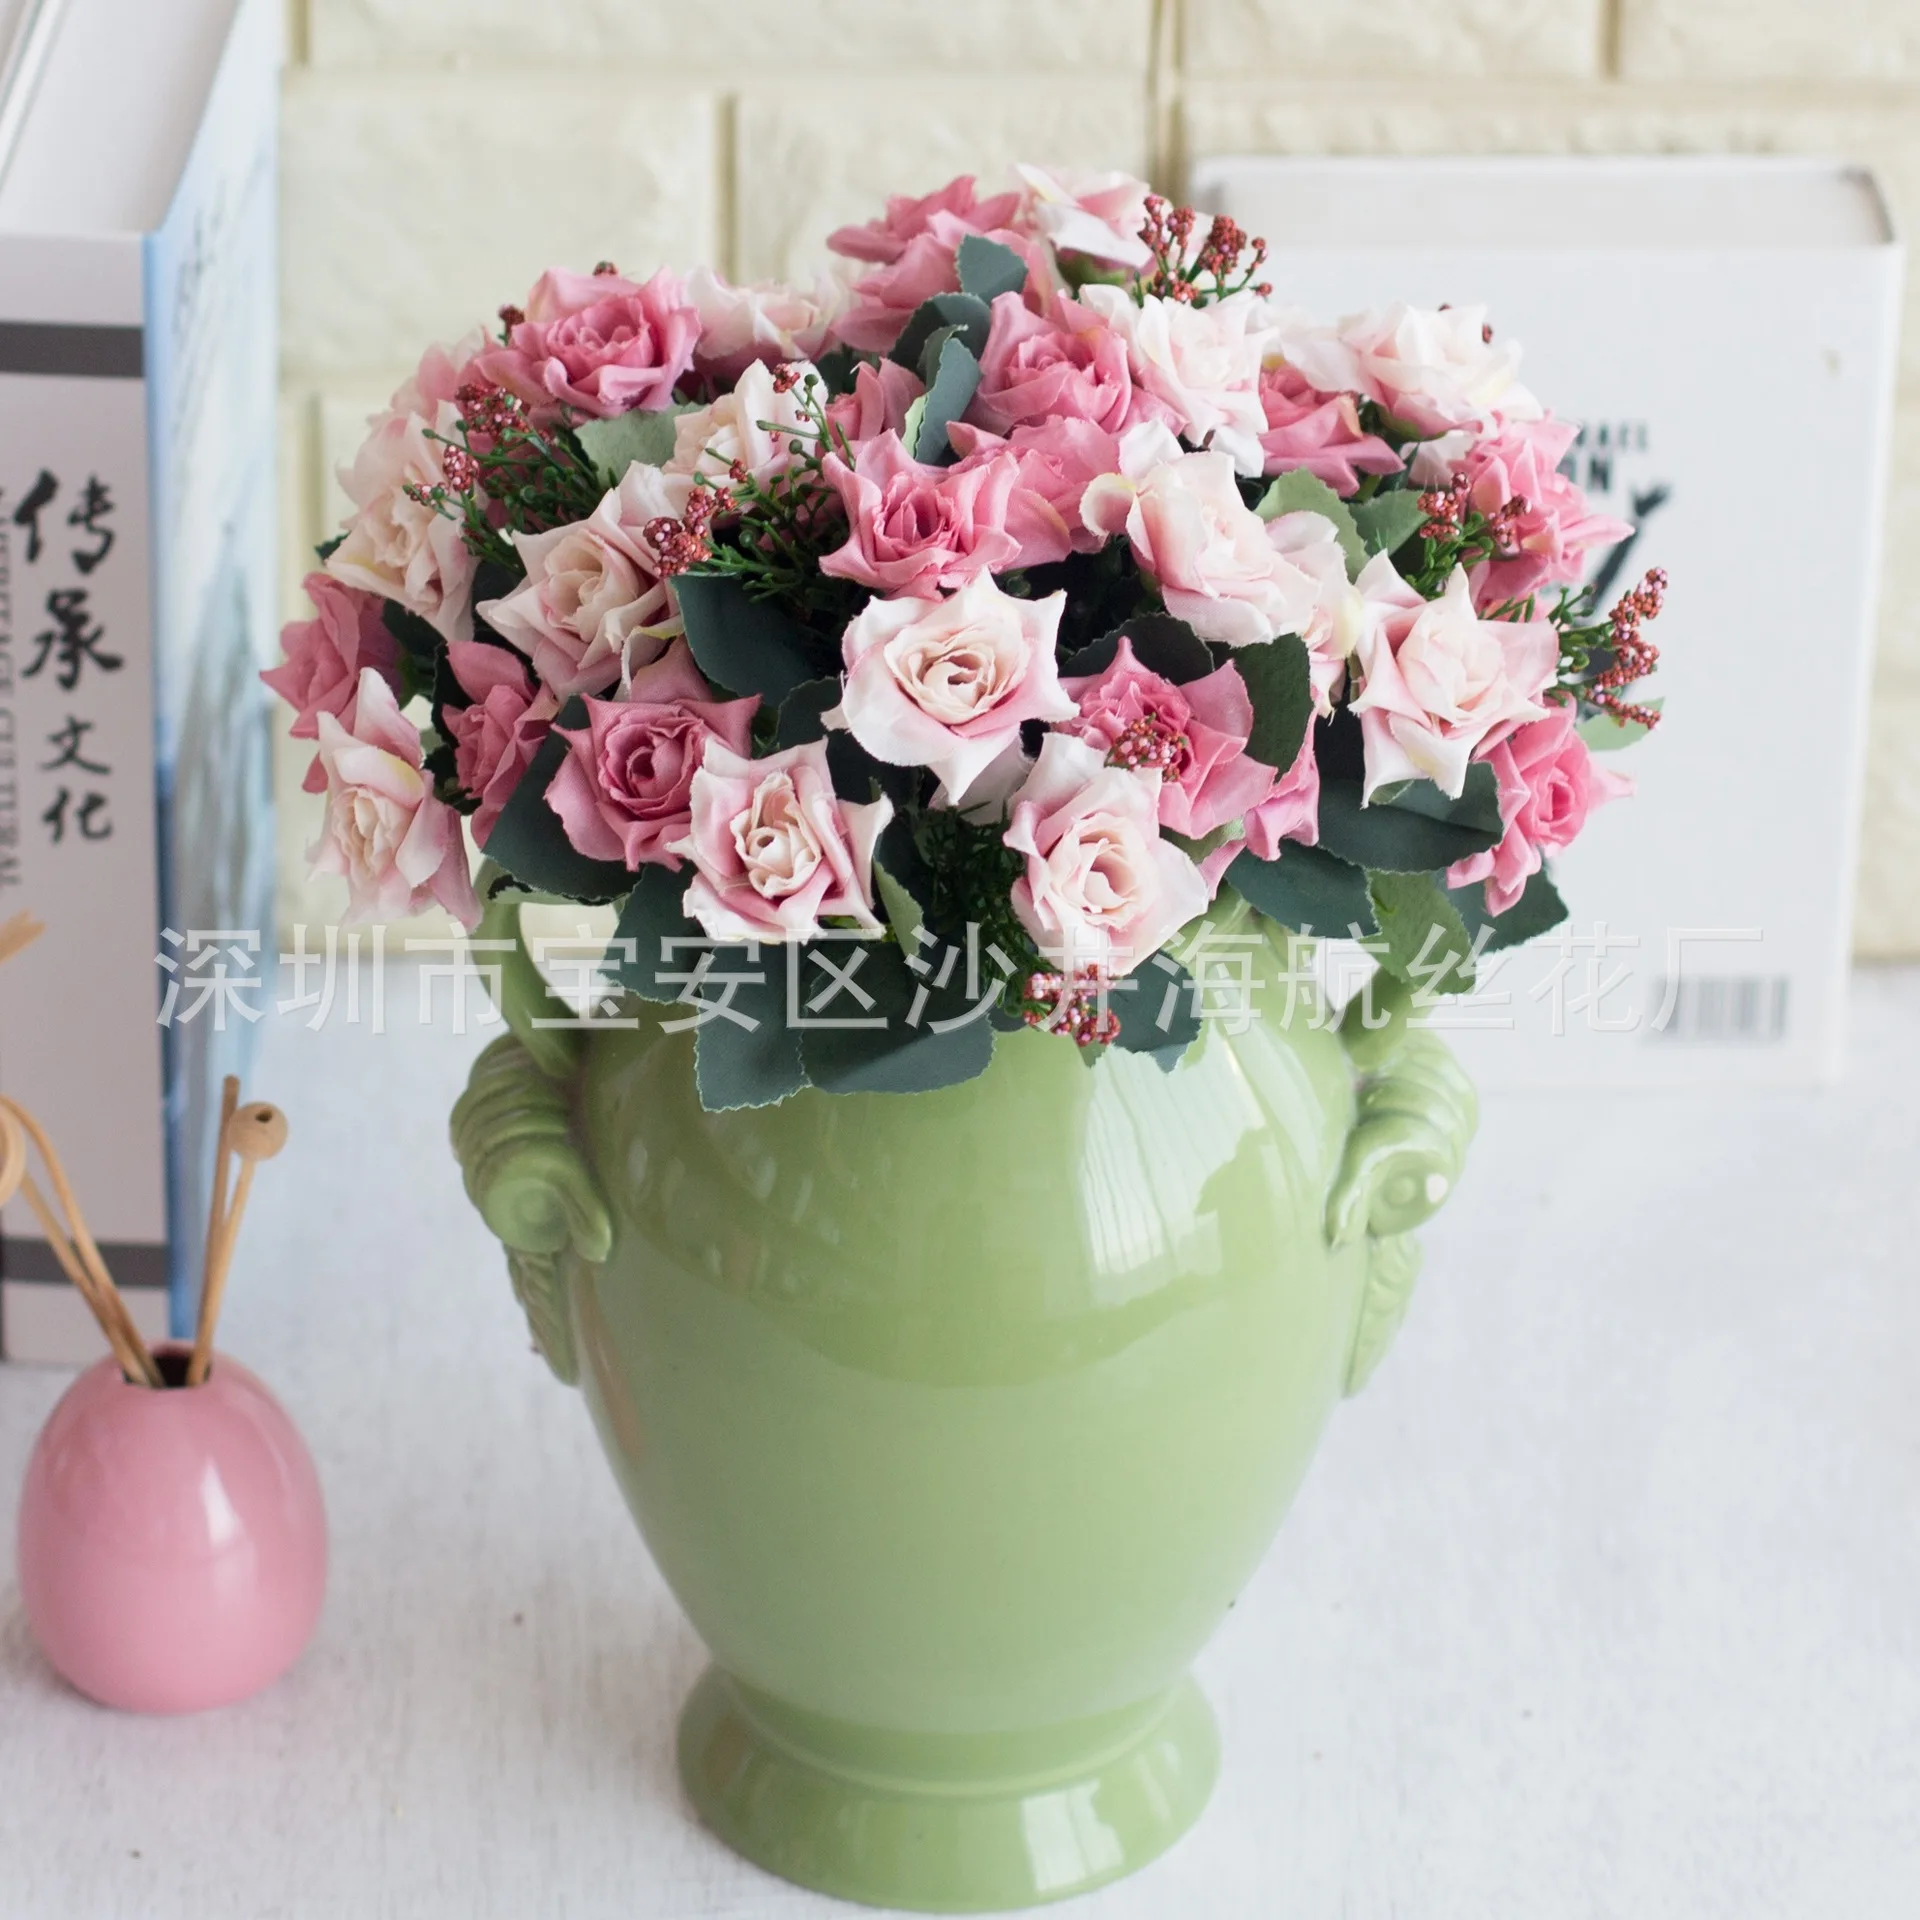 Hodvábneho Kvetu Imitácia Kvety 10 Vedúci Olejomaľba Južná Kórea Rose Rose Umelý Kvet Bytové & Dekorácie